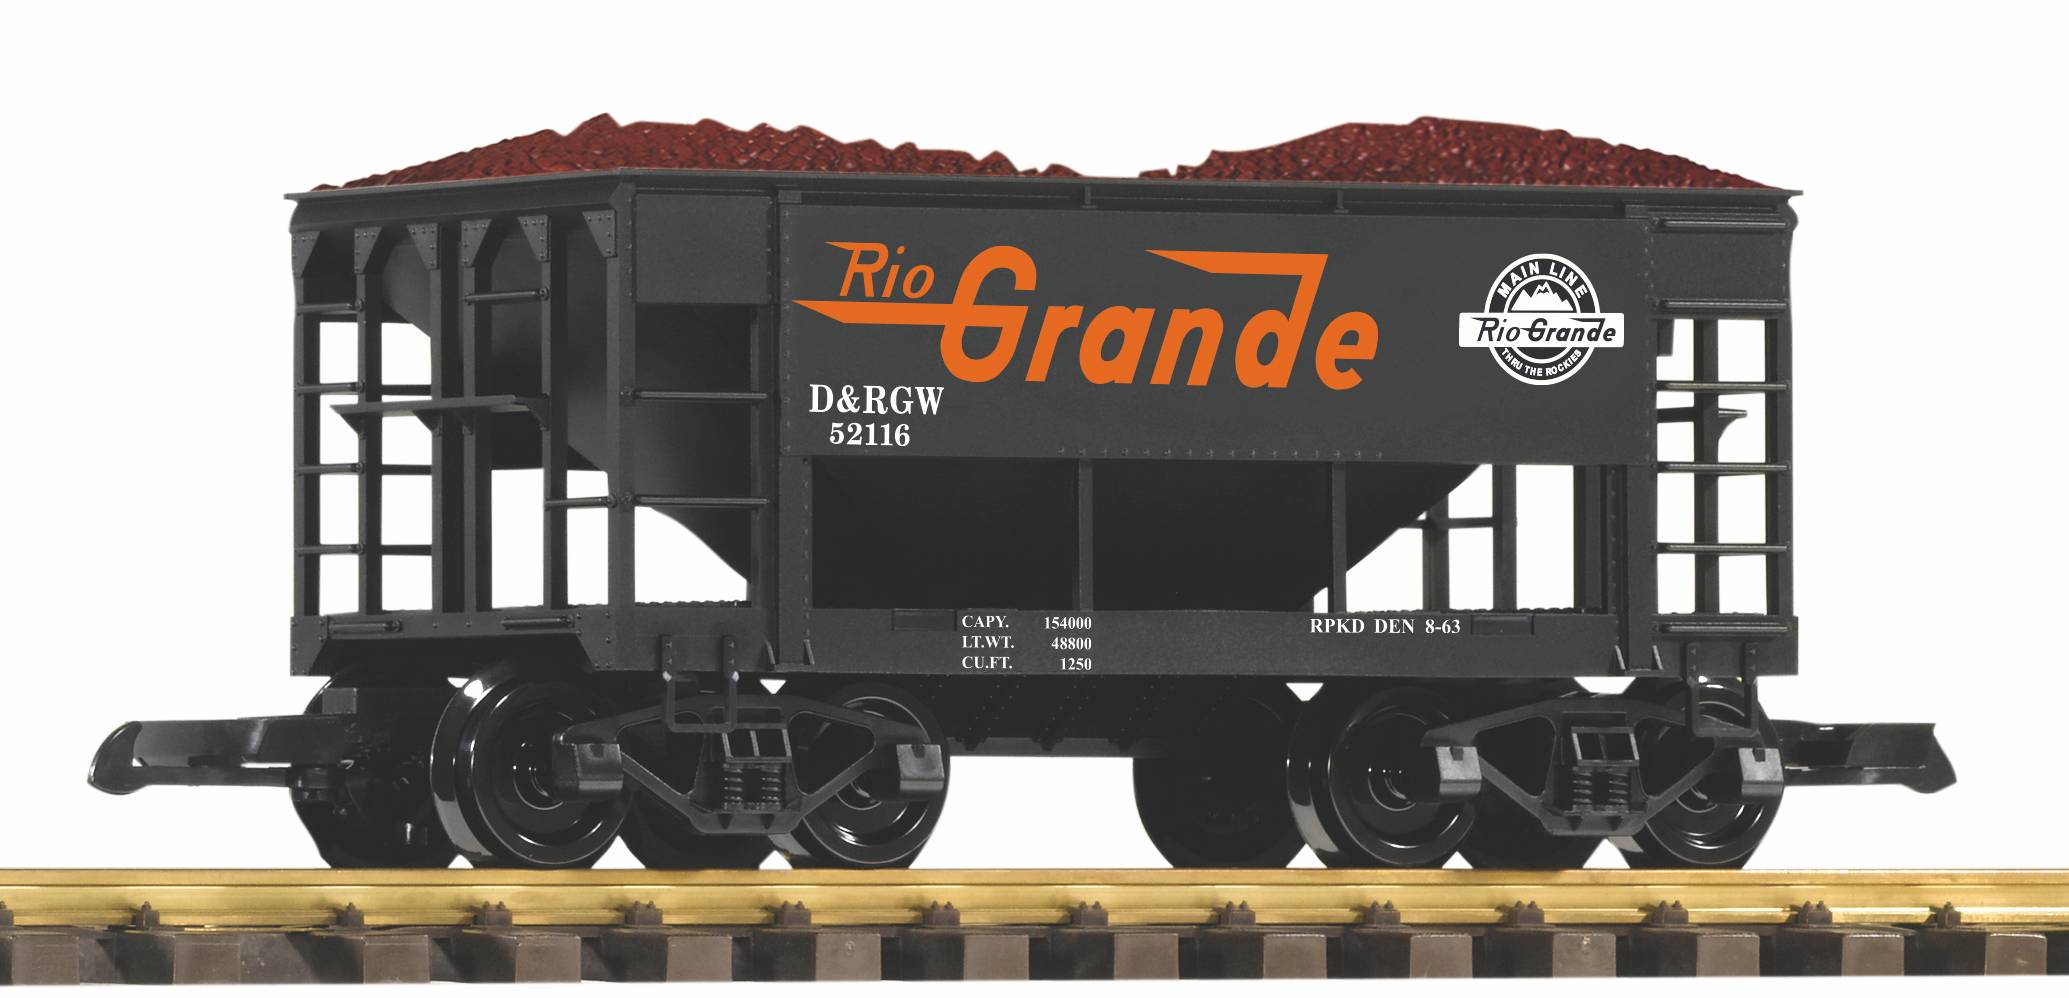 PIKO Art. Nr. 38912 -Druckvariante des Schttgutwagens (Ore Car) im Design der US Bahngesellschaft Rio Grande, D&RGW 52116, mit Erzladung.  